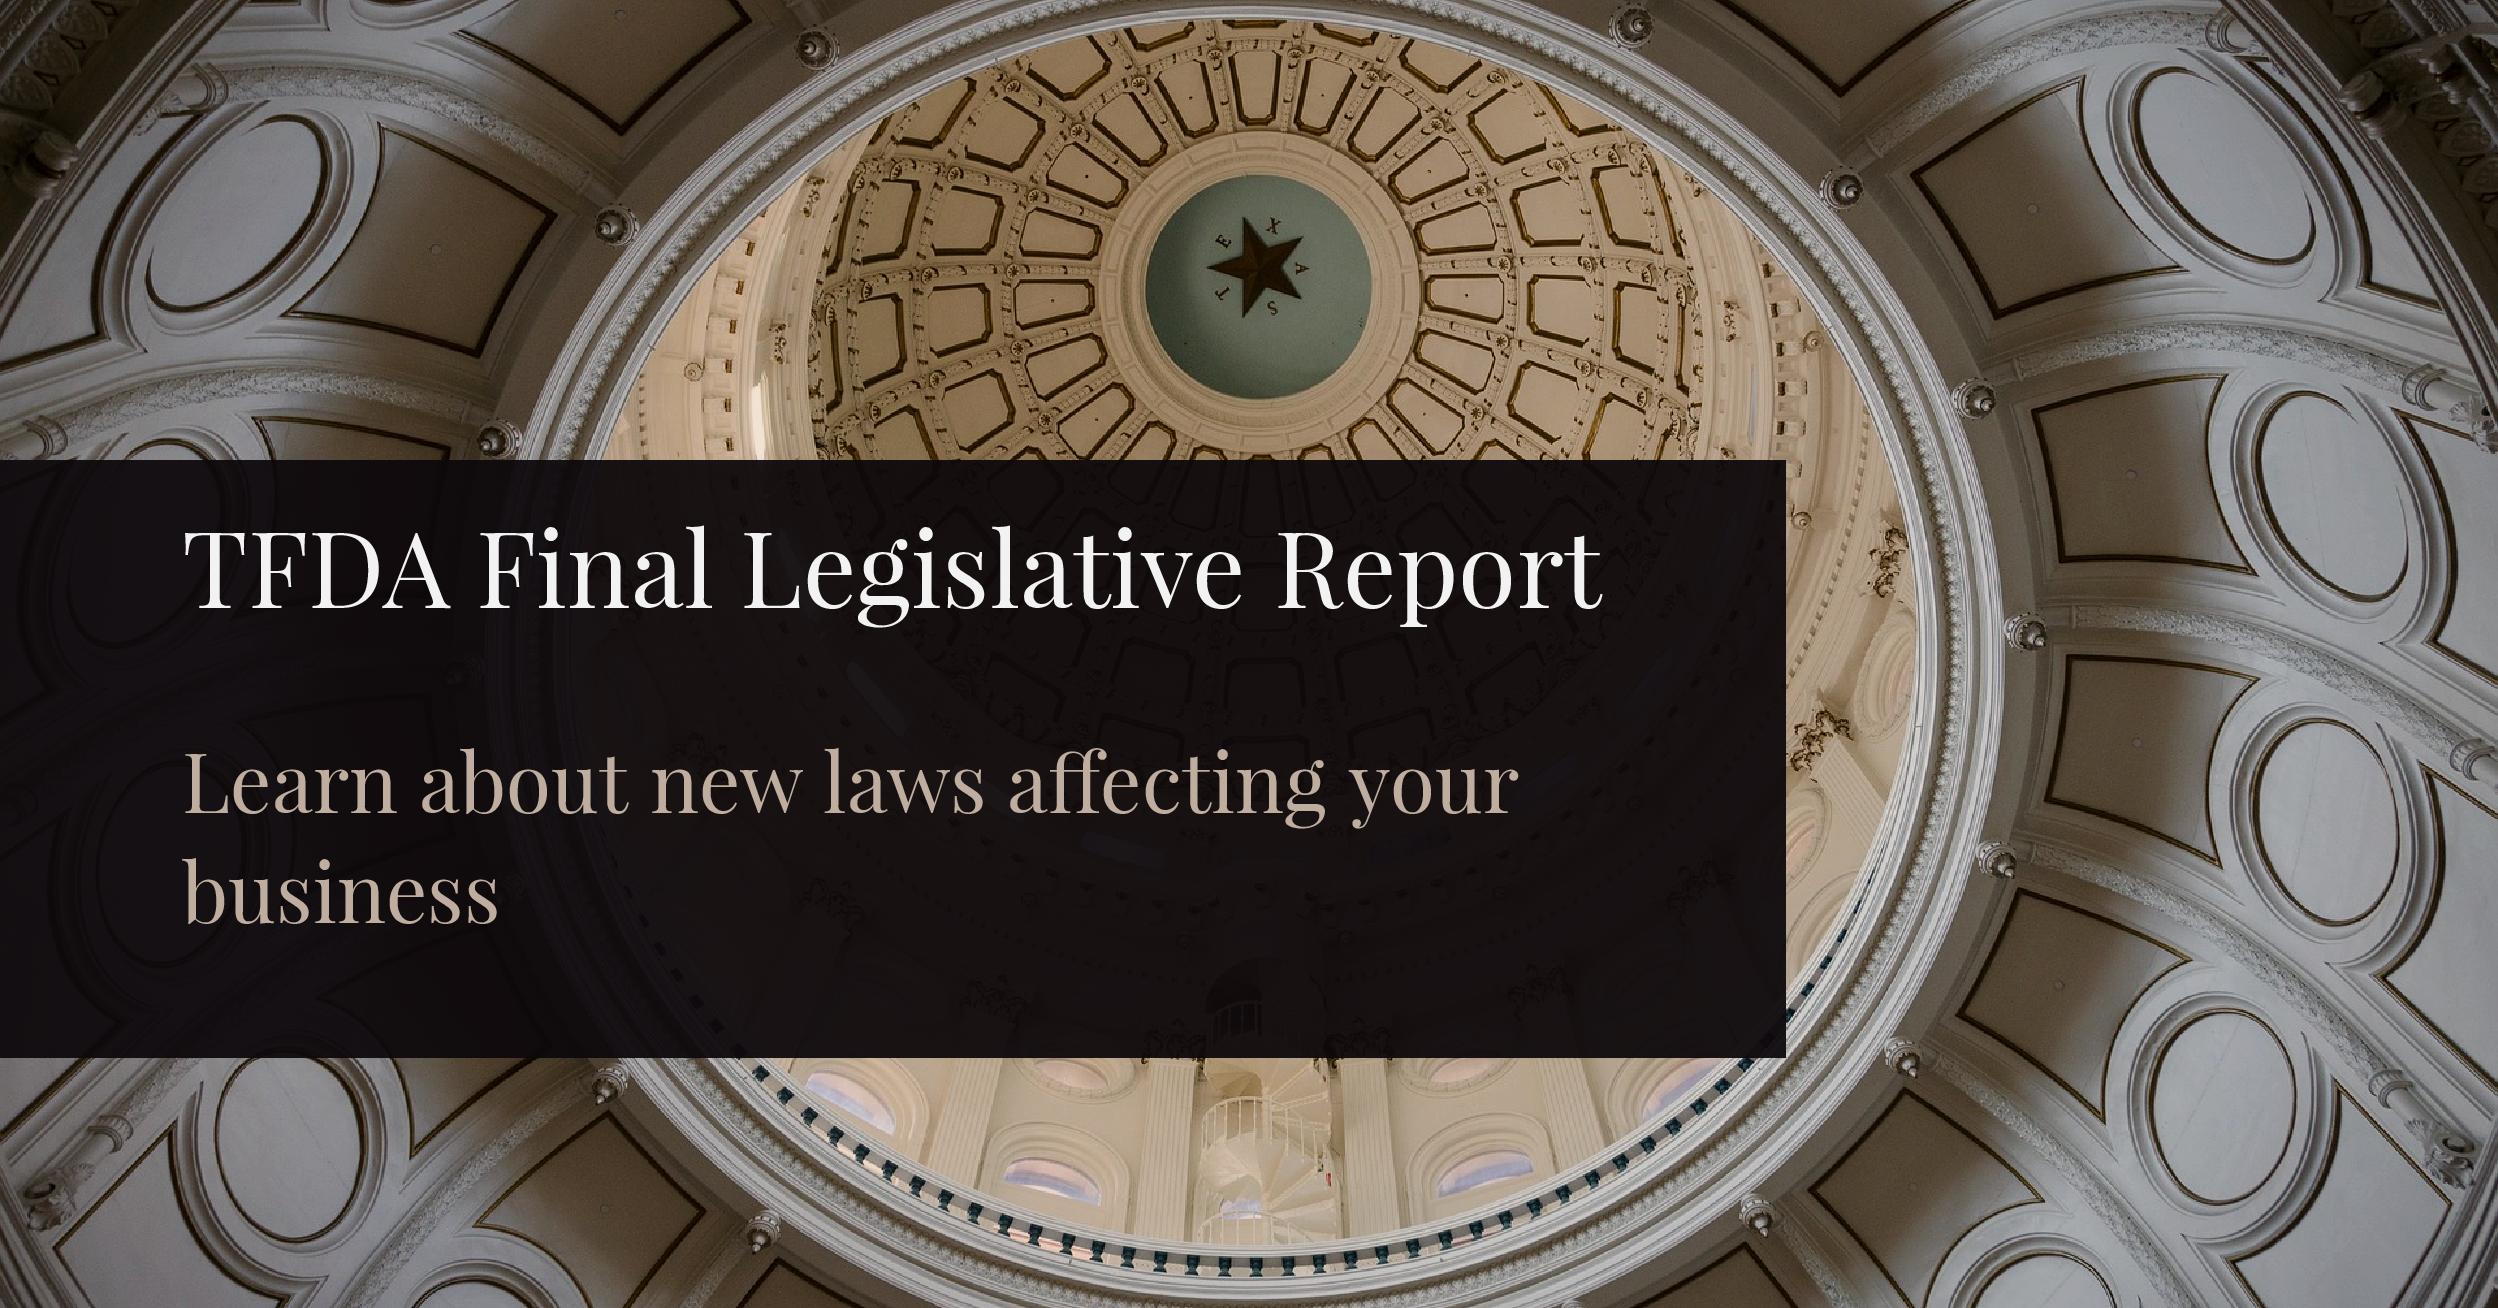 Legislative report